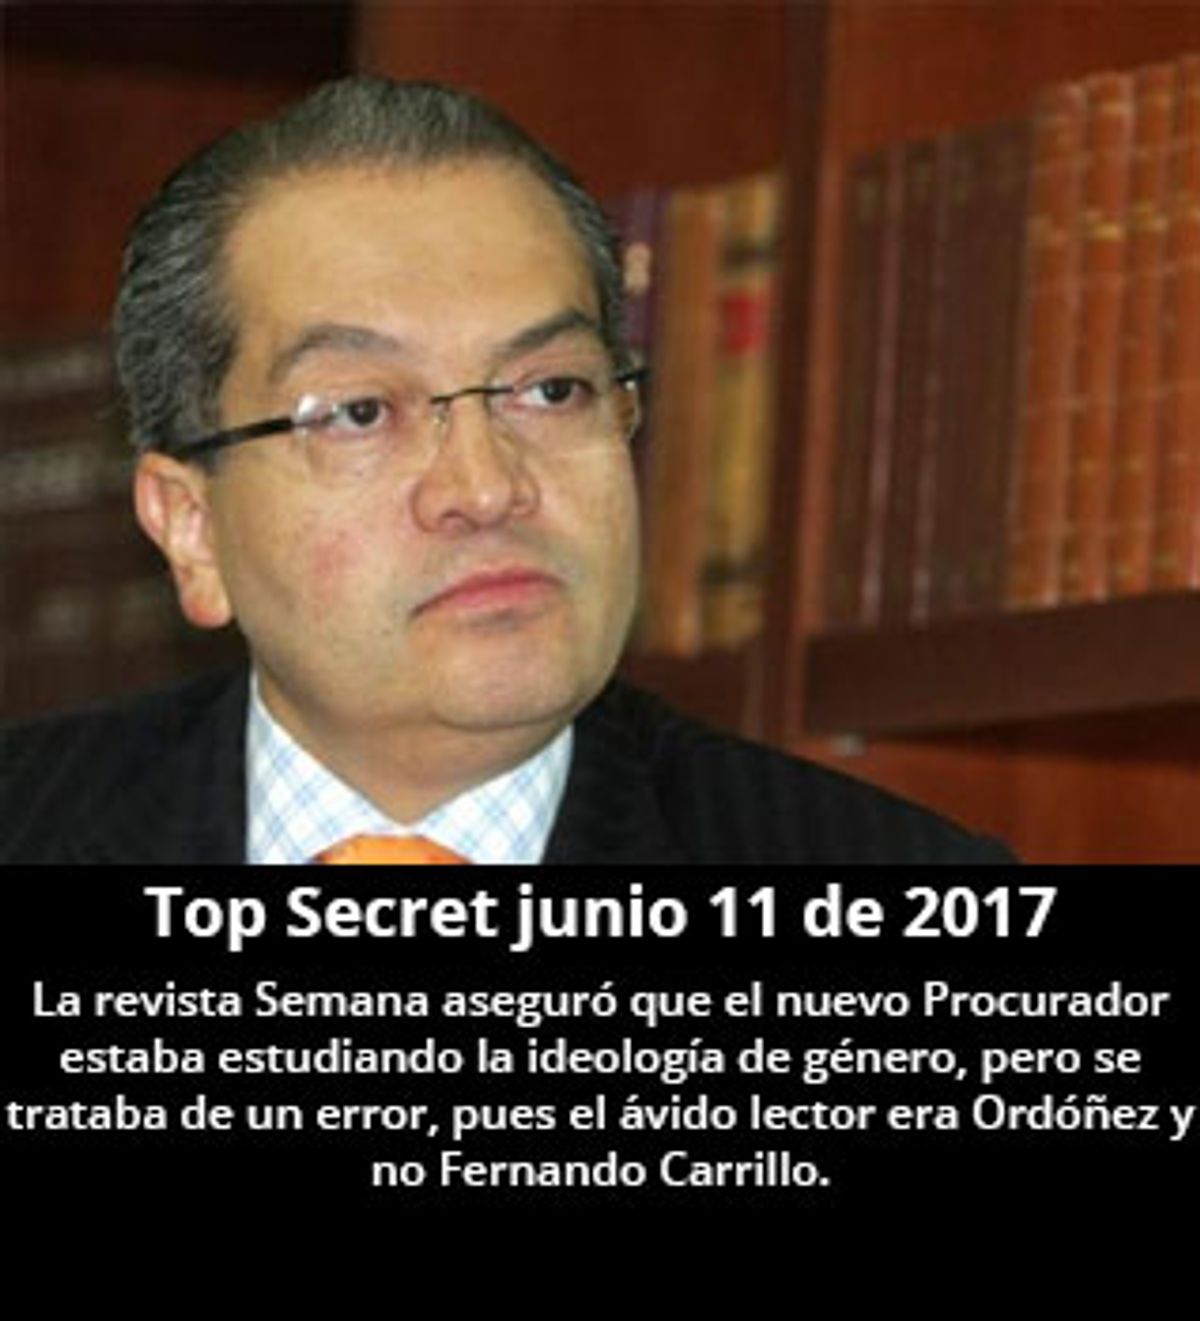 Top Secret junio 11 de 2017